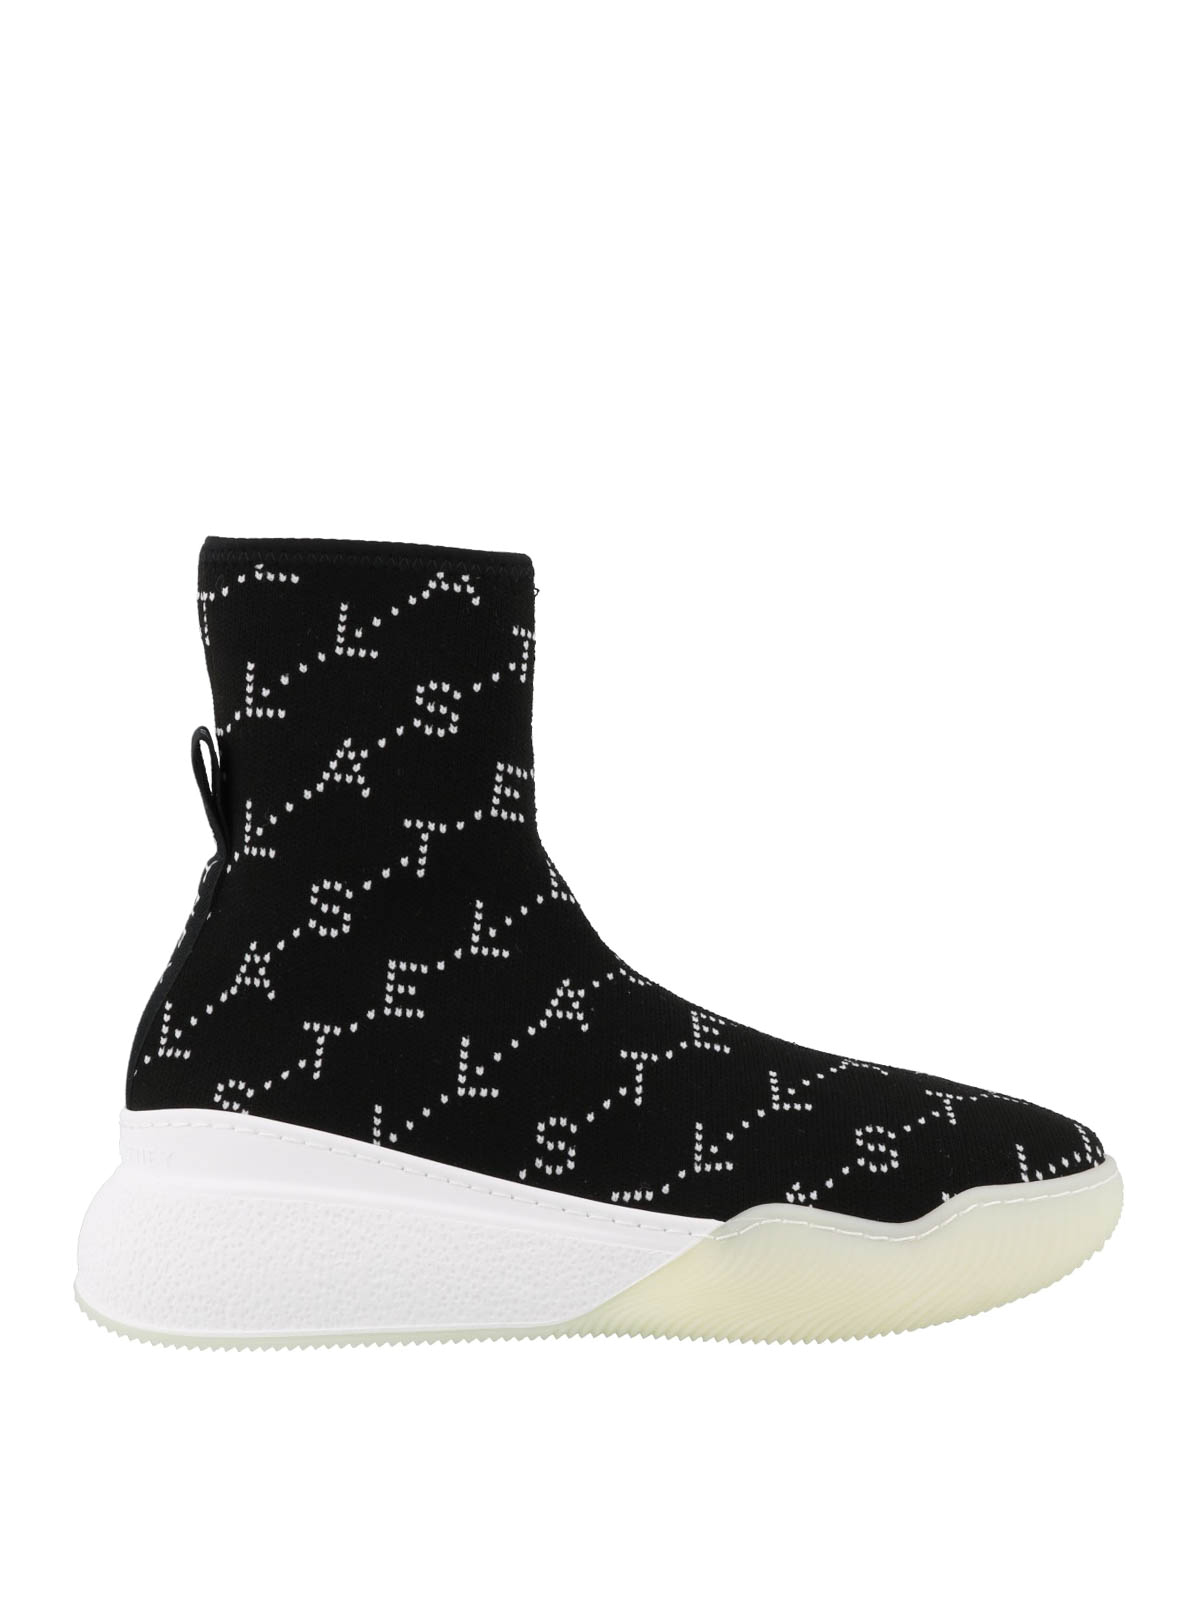 Share 164+ stella mccartney sock sneakers best